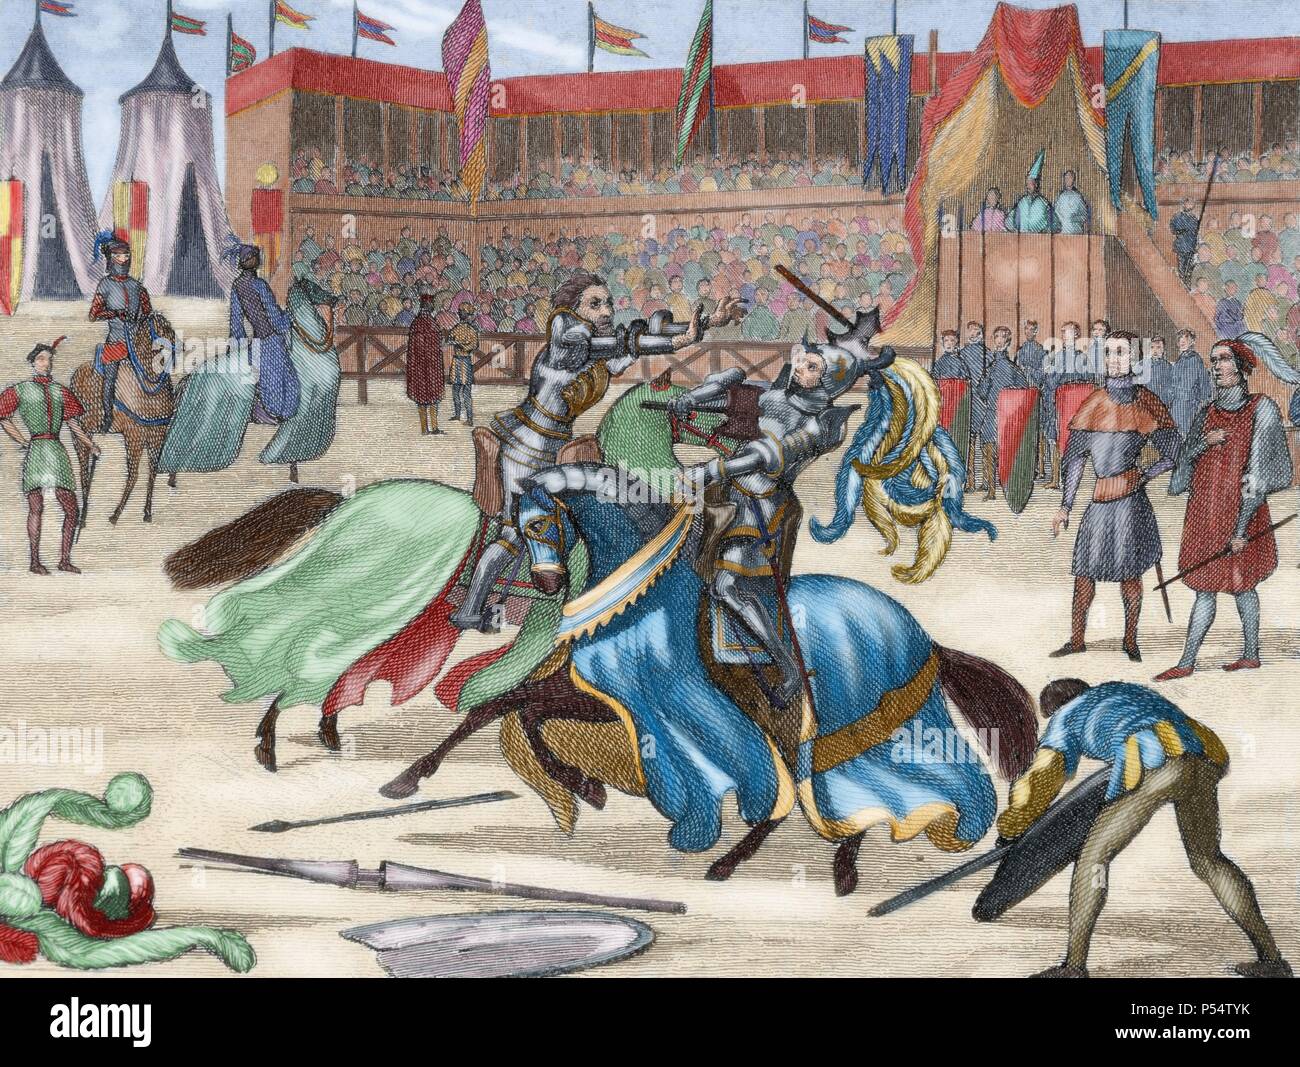 Torneo medieval. Grabado en color. Siglo xix. Foto de stock